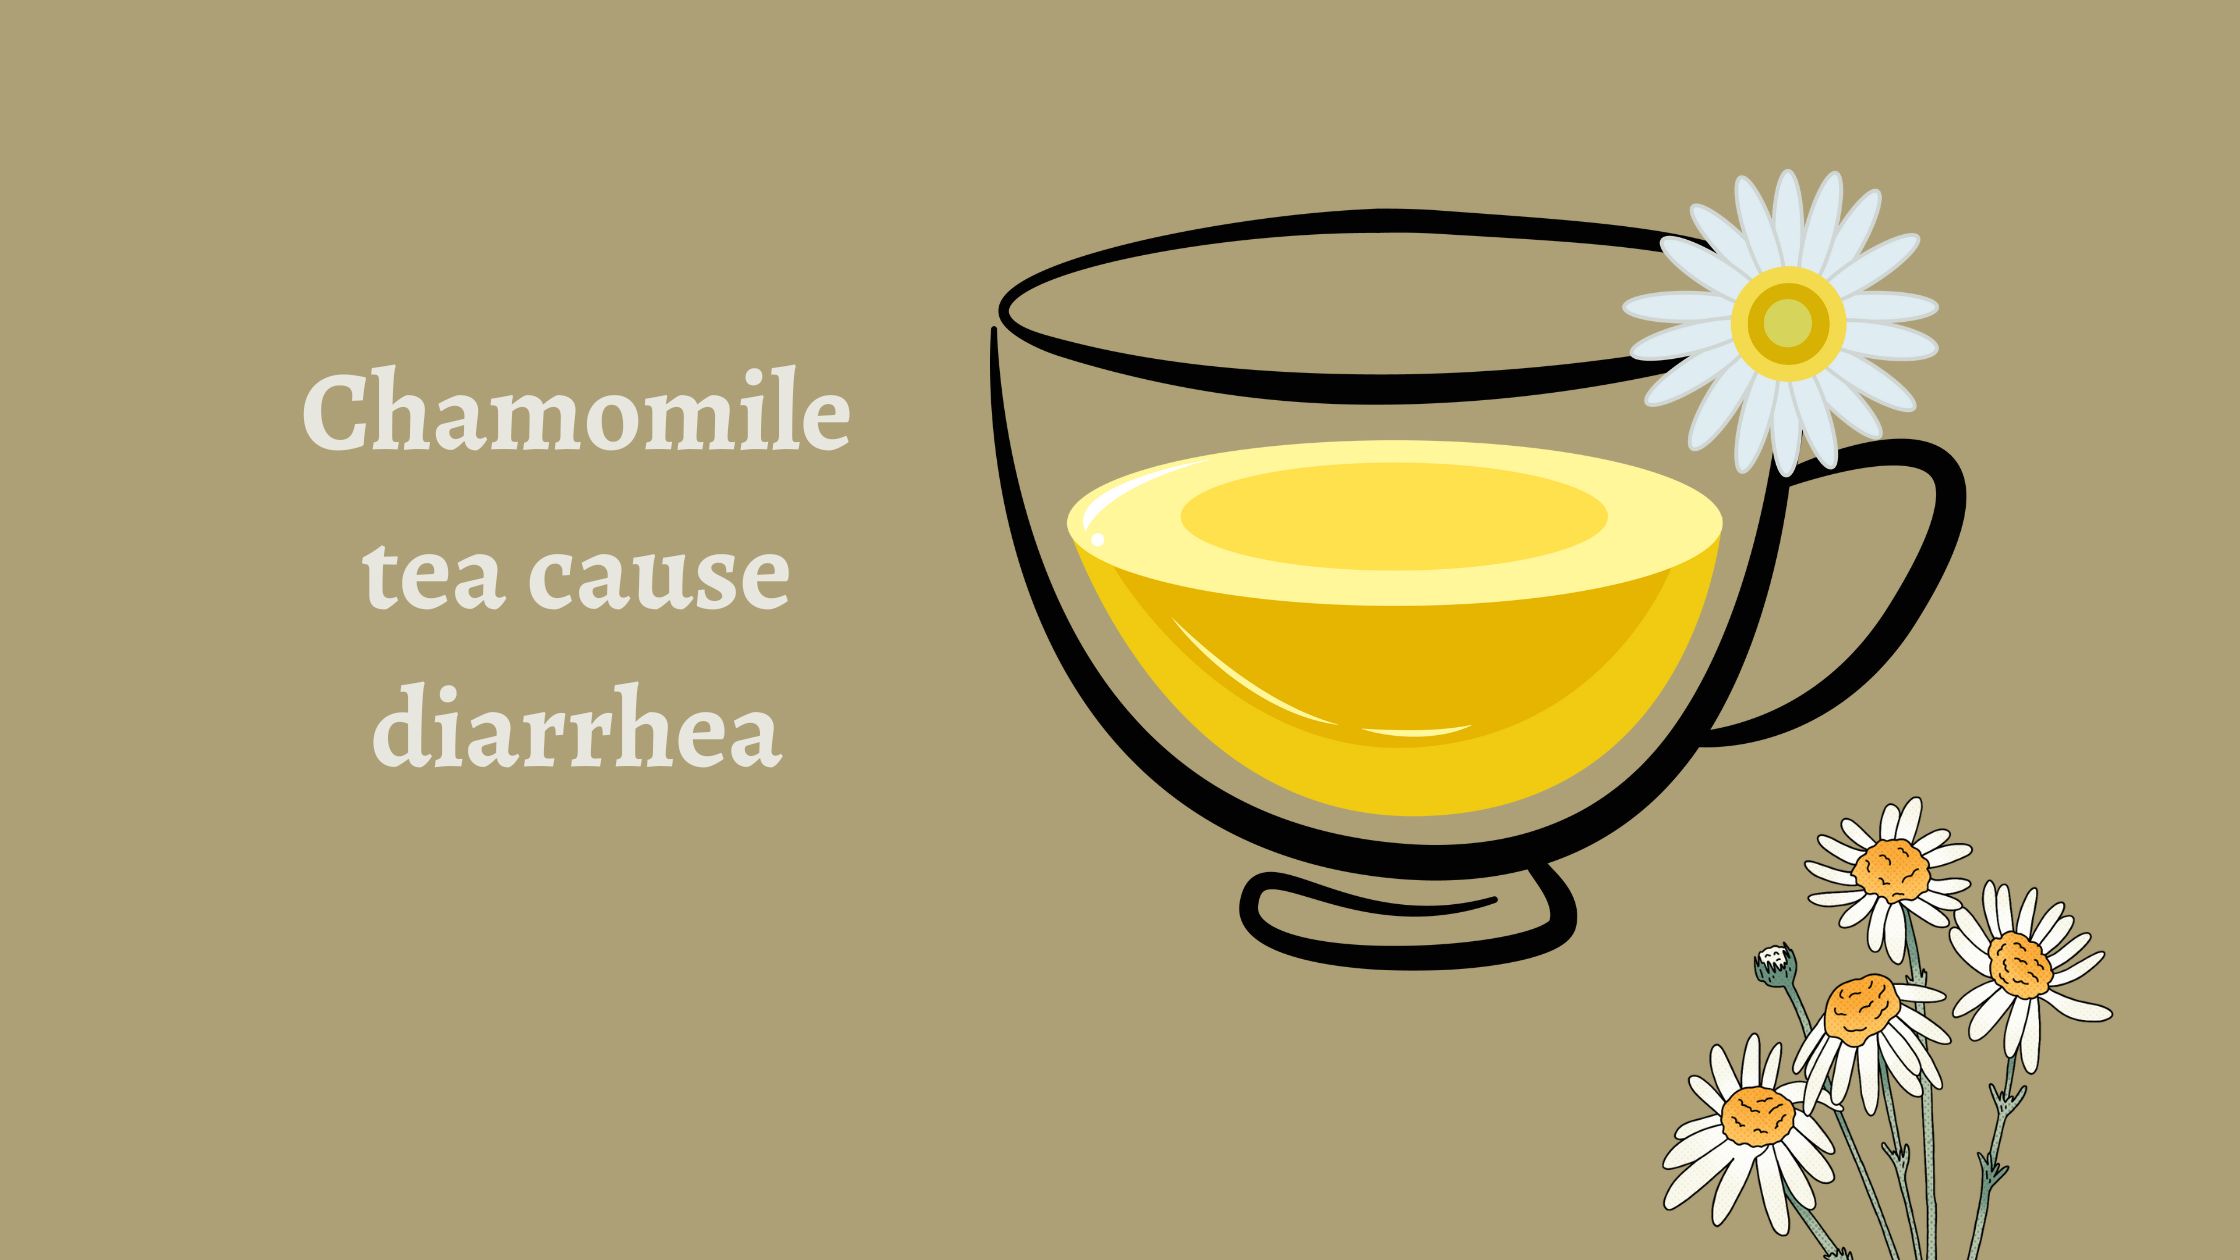 does chamomile tea cause diarrhea